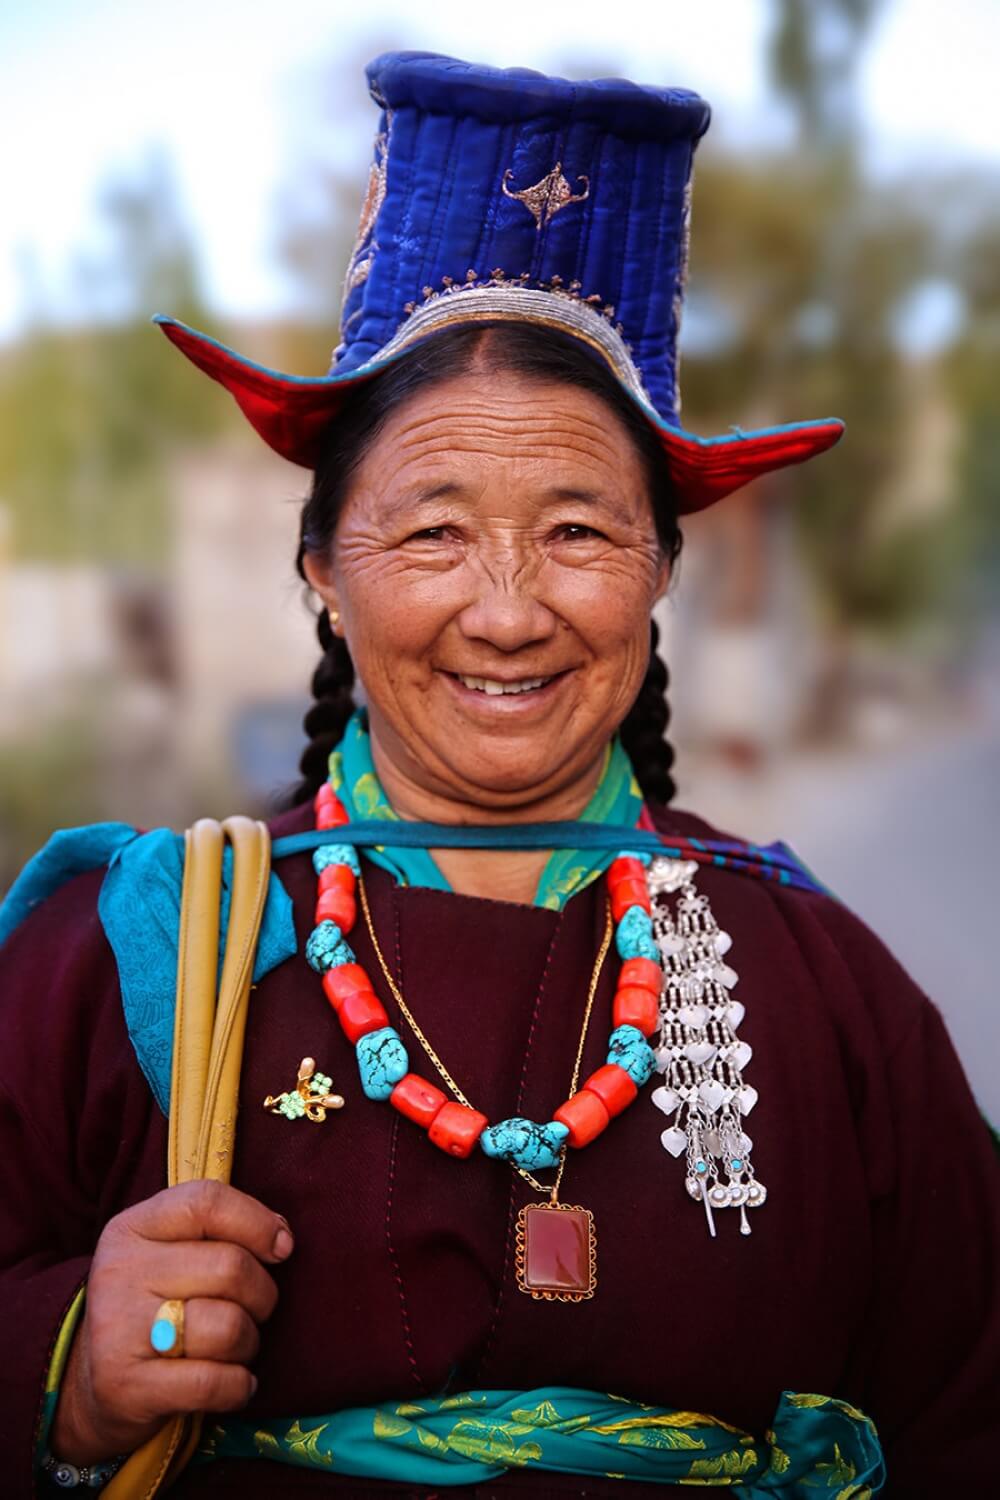 inspiringlife.pt - Fotógrafo mostra a diversidade cultural de 84 países através dos rostos dos seus habitantes